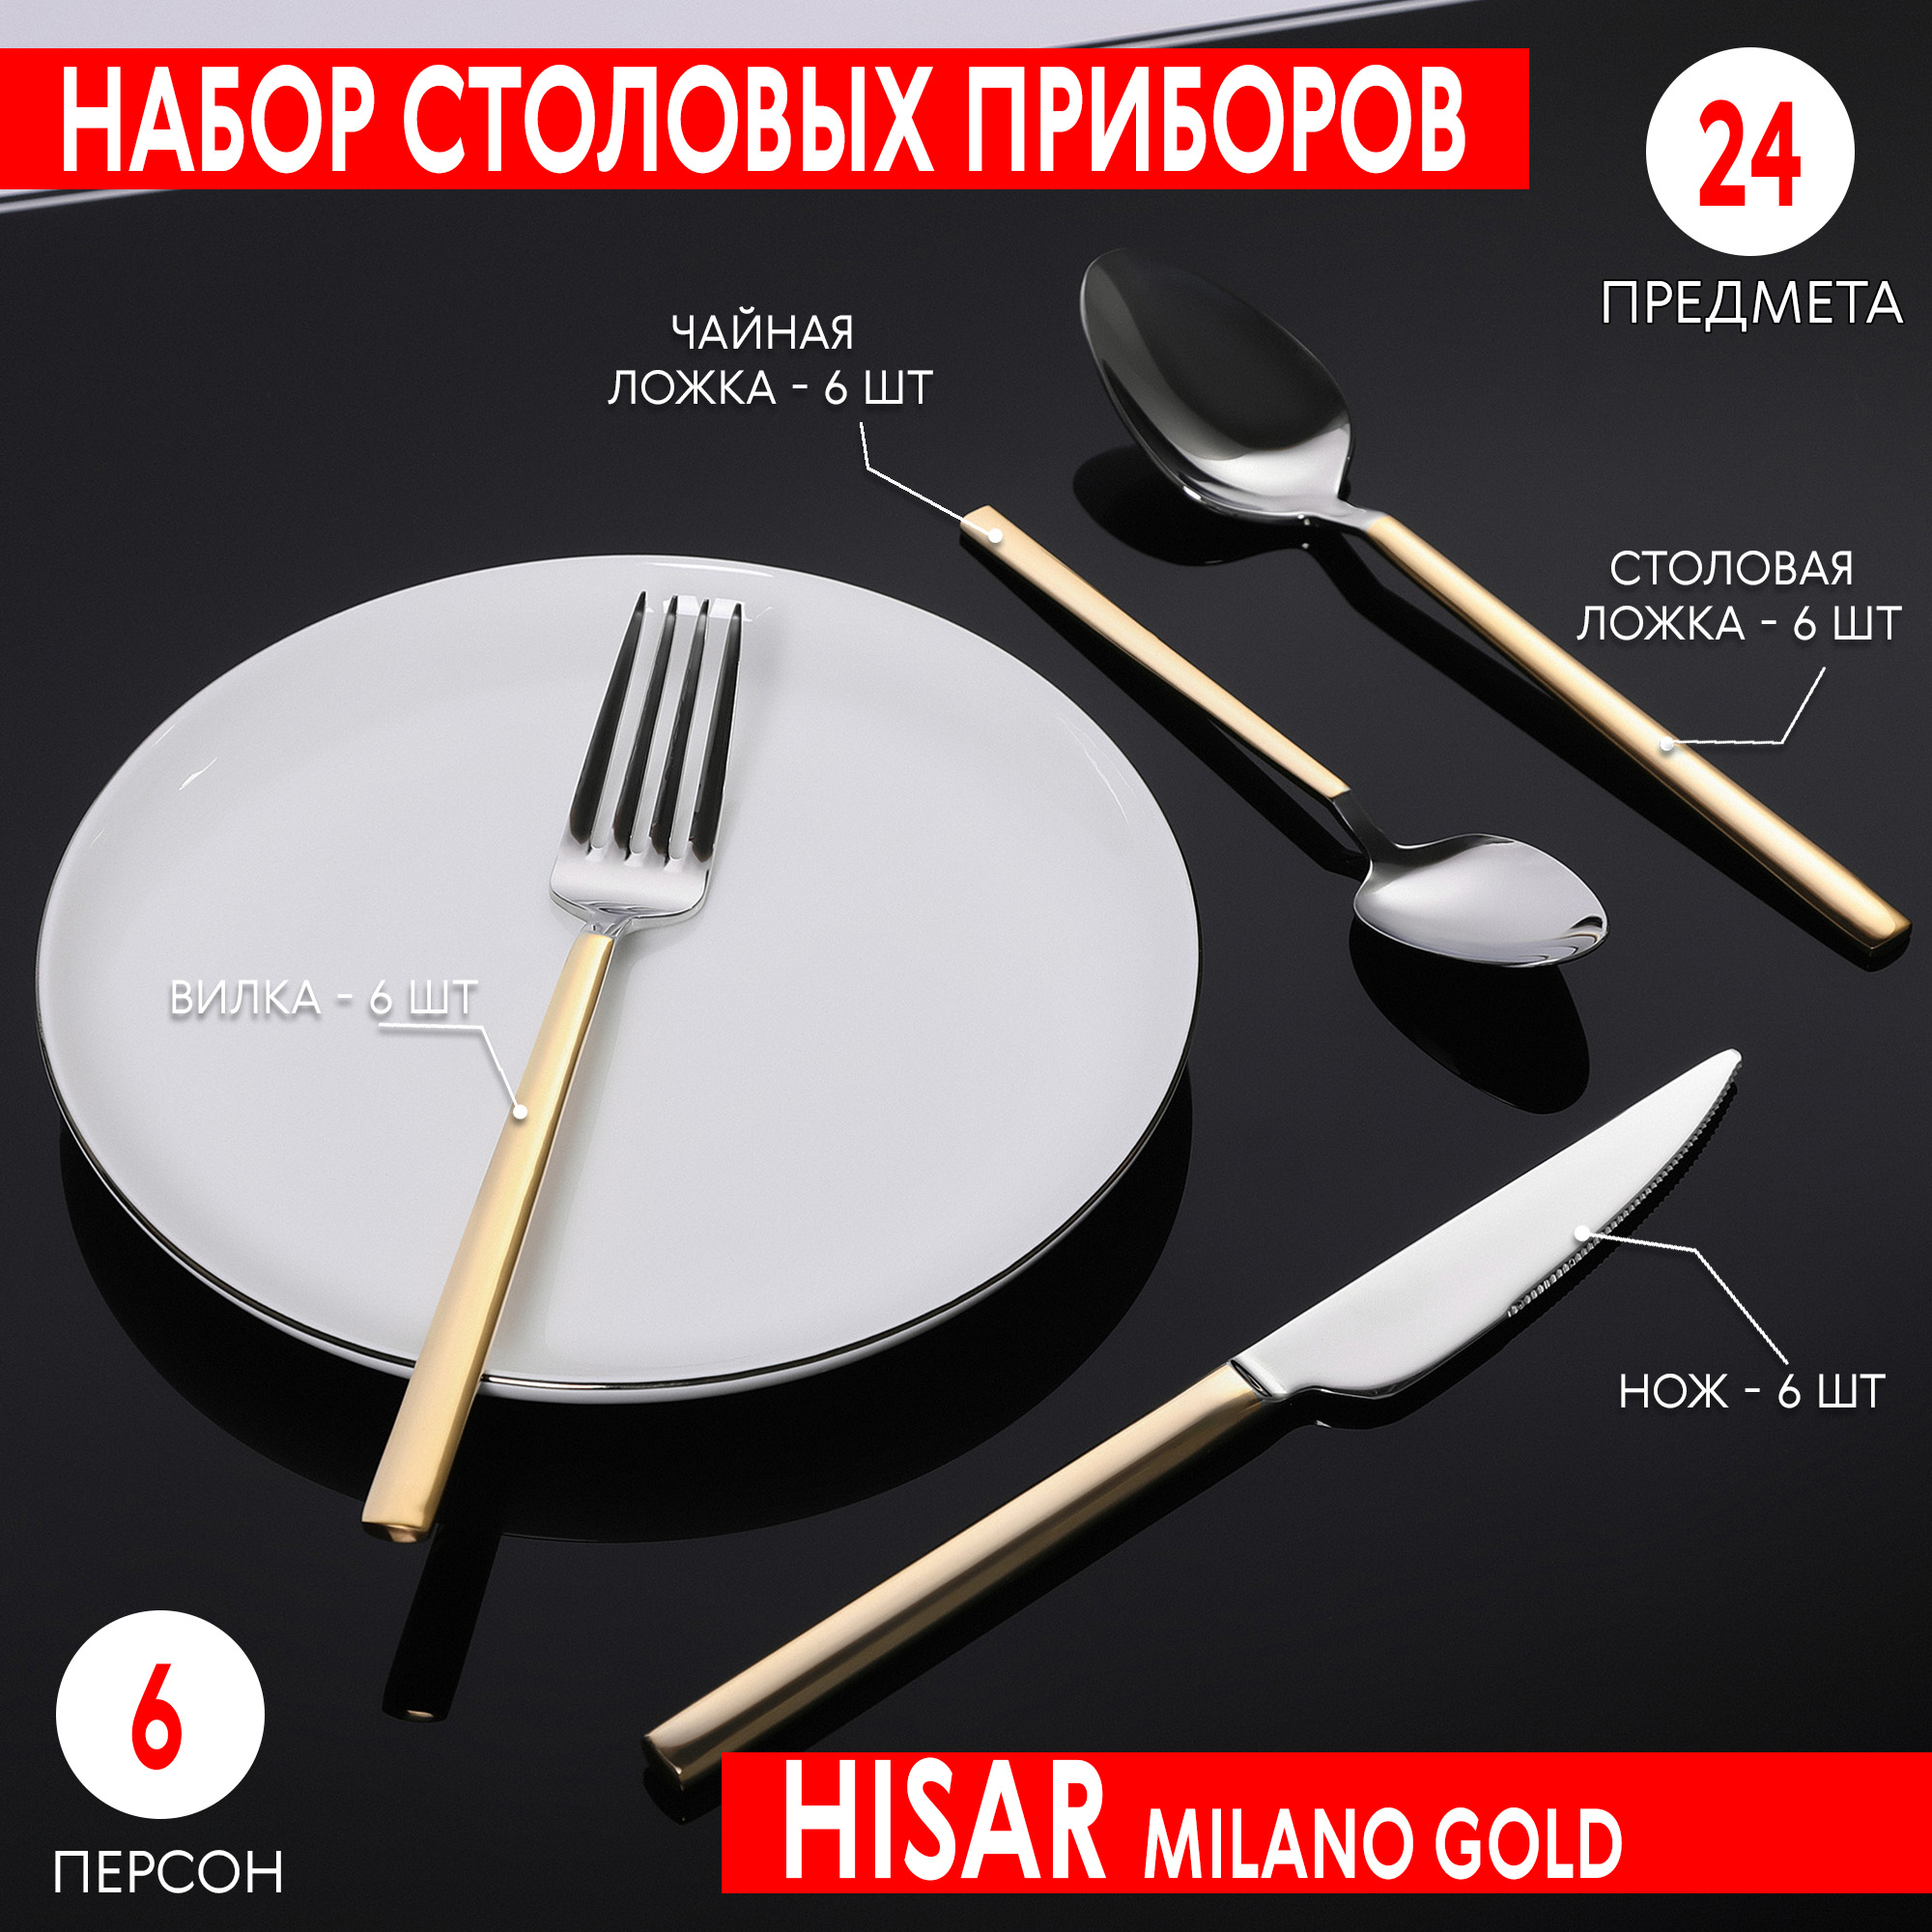 Набор столовых приборов Hisar Milano gold 6 персон 24 предмета, цвет серебристый - фото 2